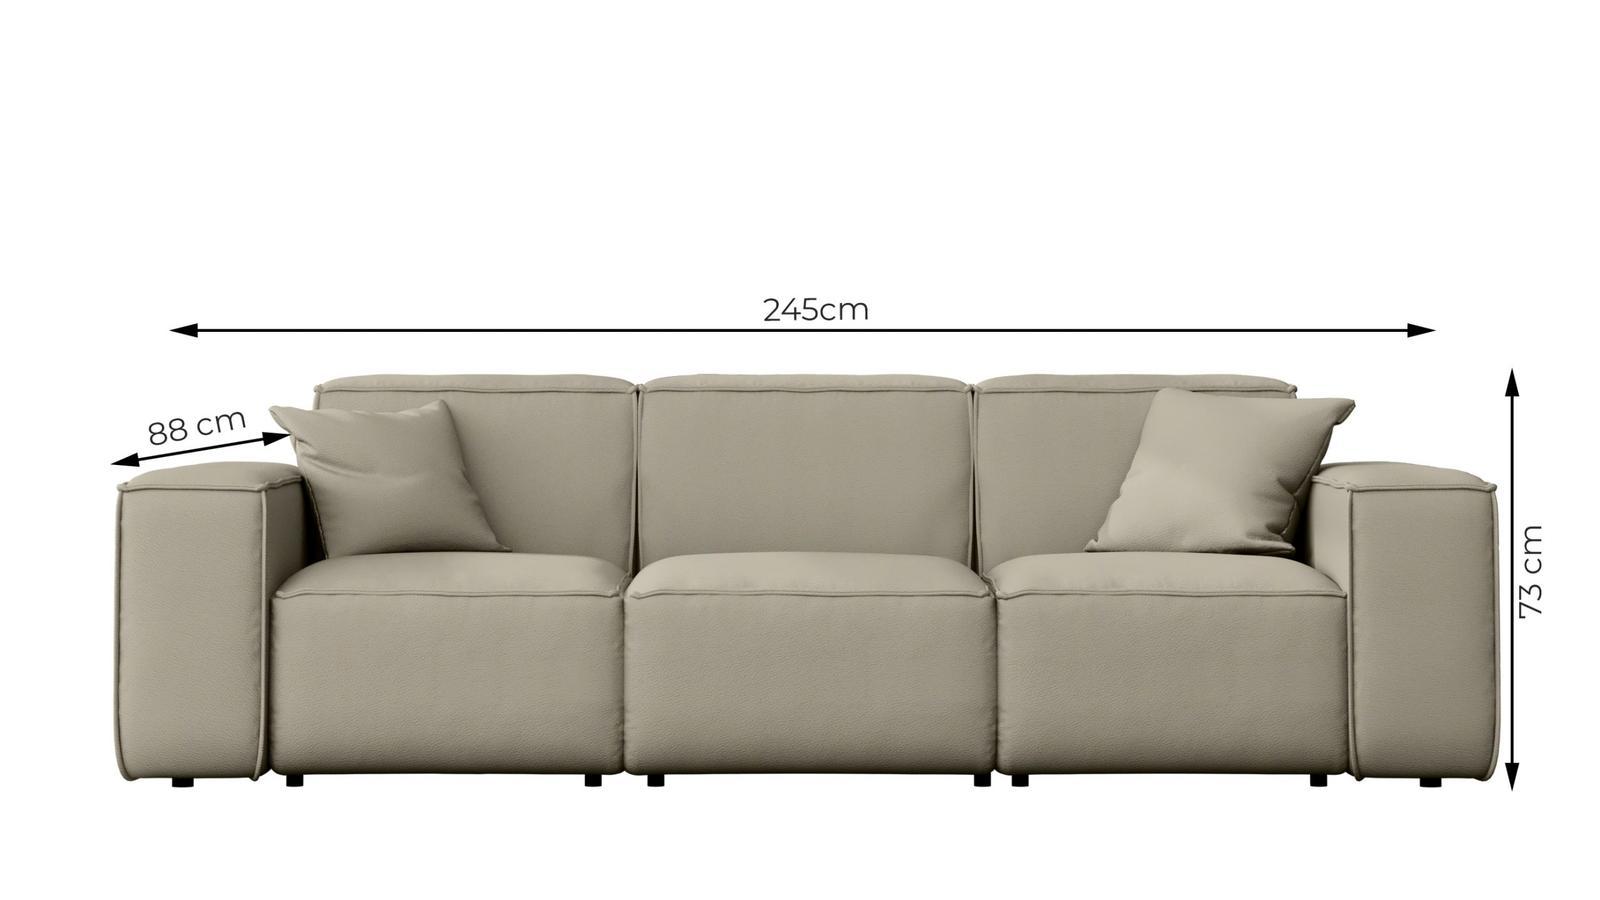 Sofa ogrodowa MALIBU 245x88x103 cm wodoodporna UV 3-os + 2 poduszki do ogrodu jasnozielona nr. 3